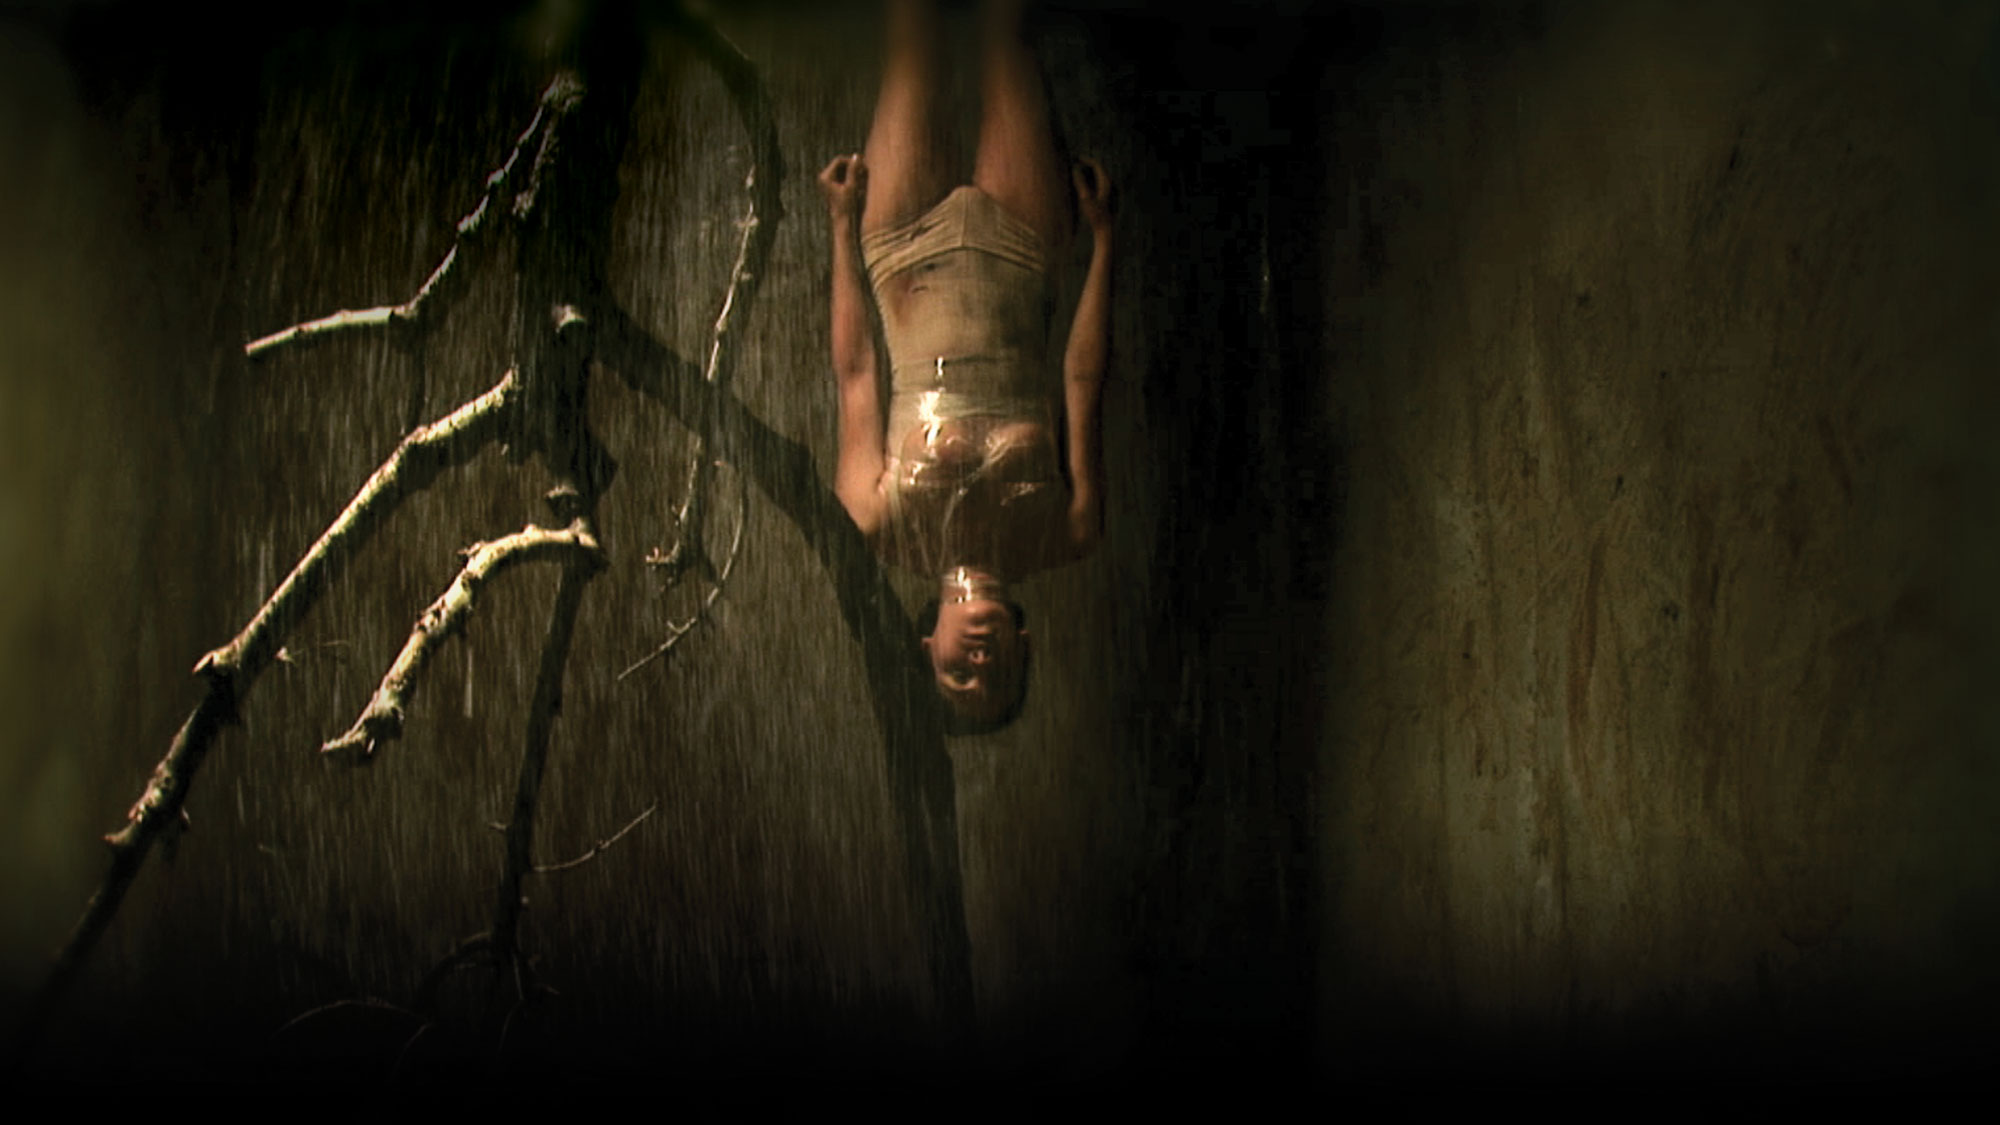 A woman hanging upside down in rain amongst a dead tree branch, lit in gold light. 